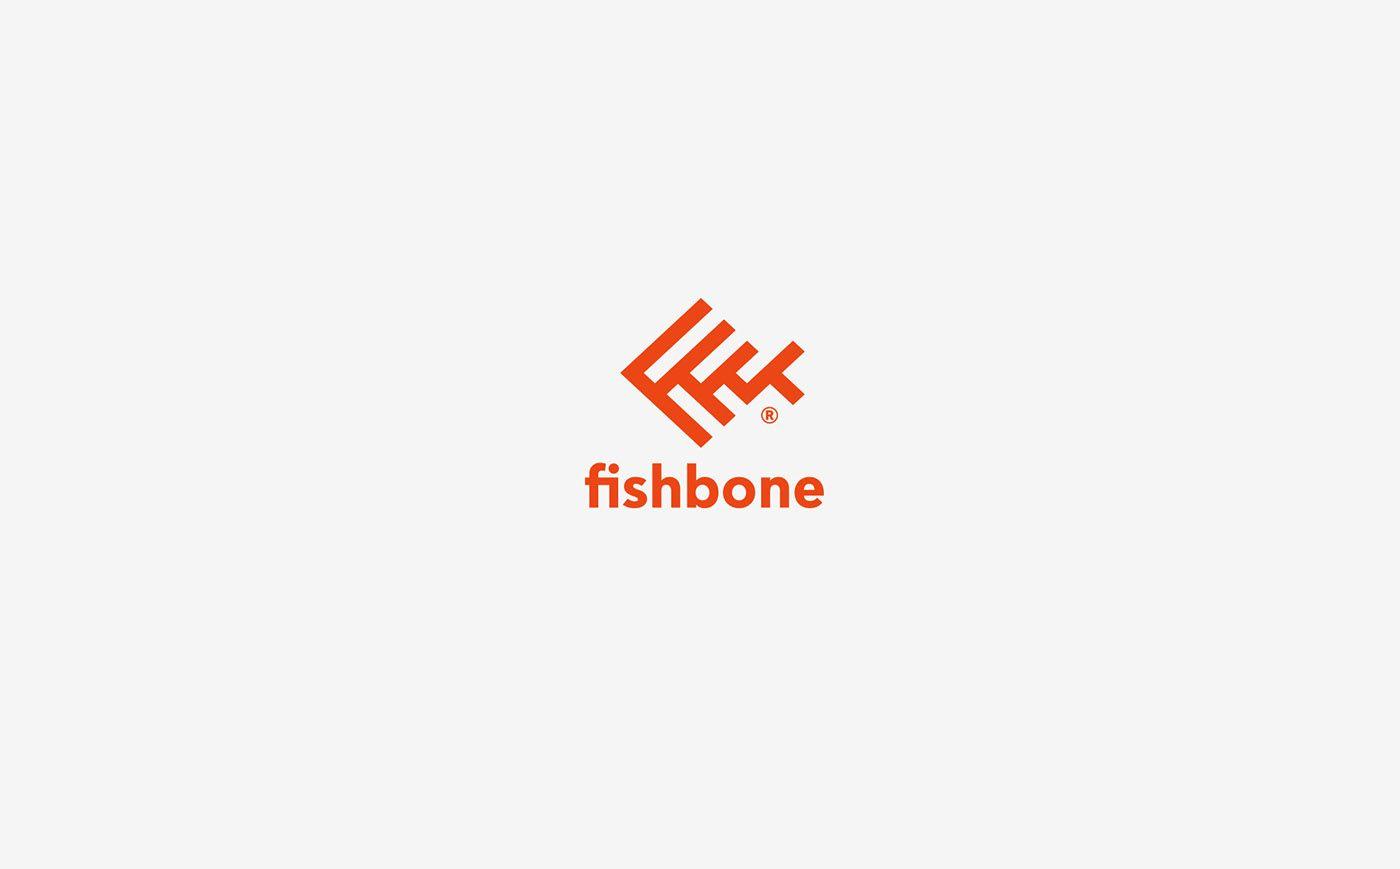 Fishbone Logo - Fishbone Logo & Identity Design